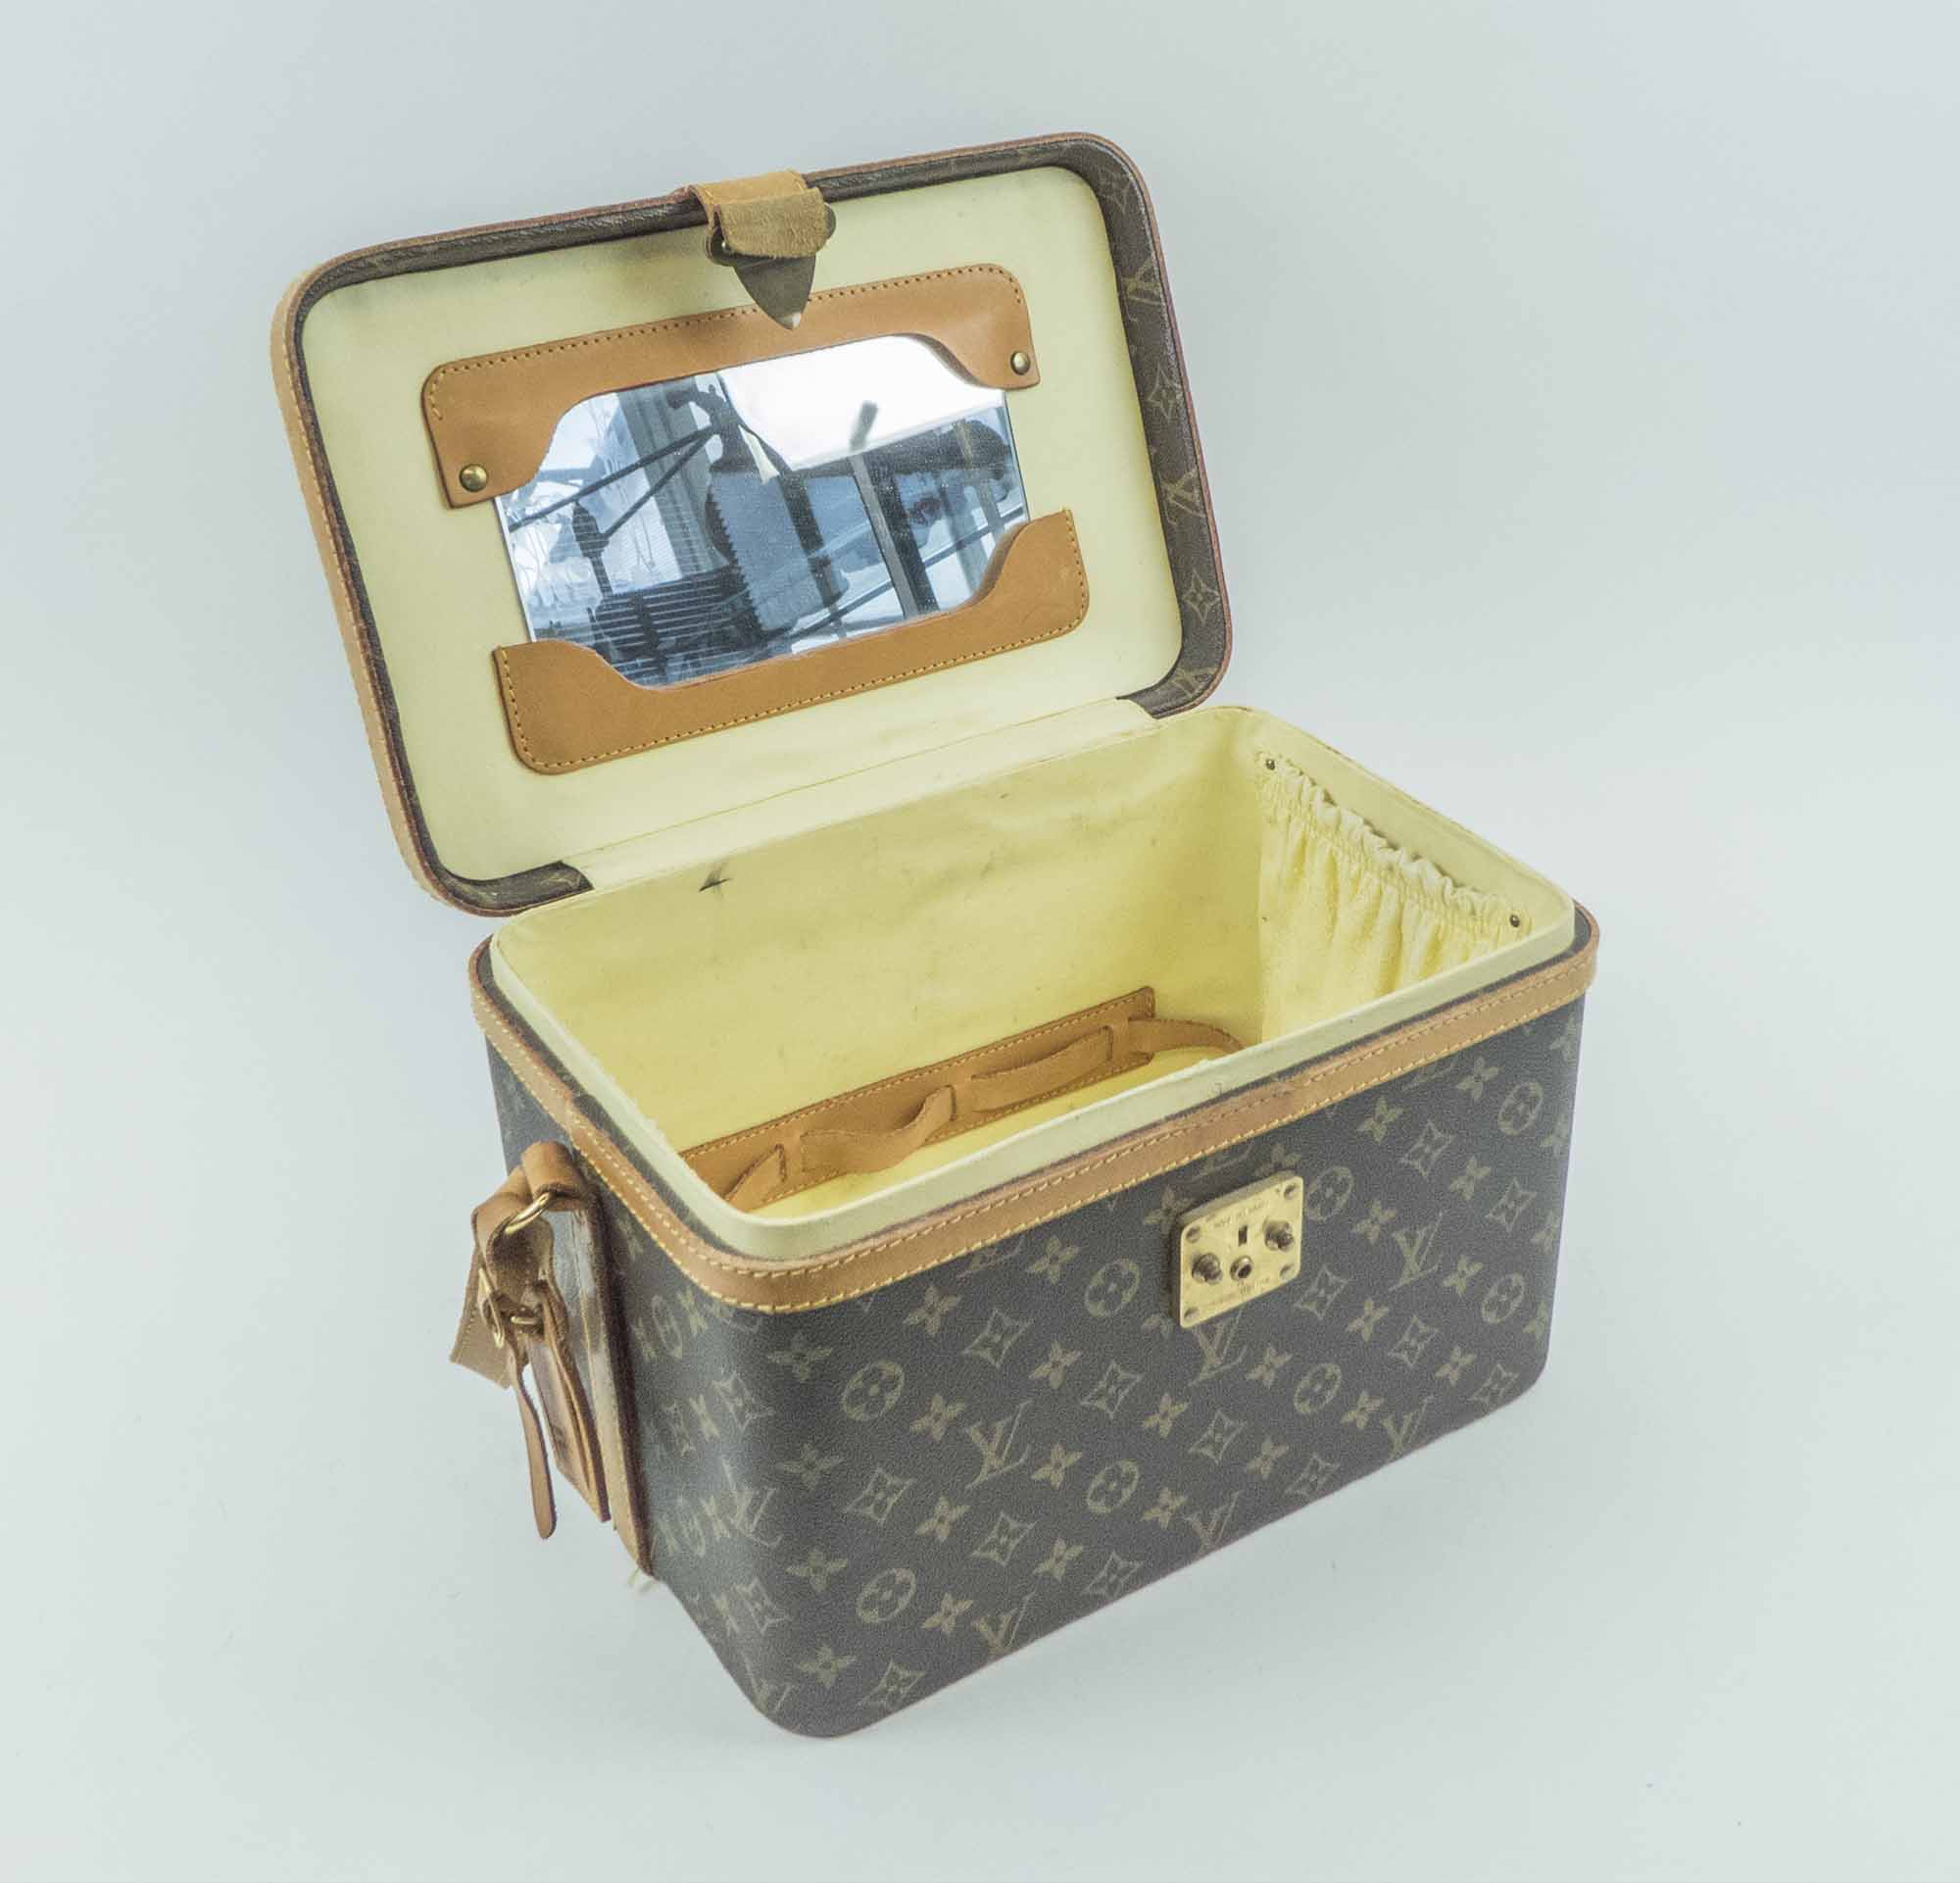 Sold at Auction: Louis Vuitton, Louis Vuitton Train Case